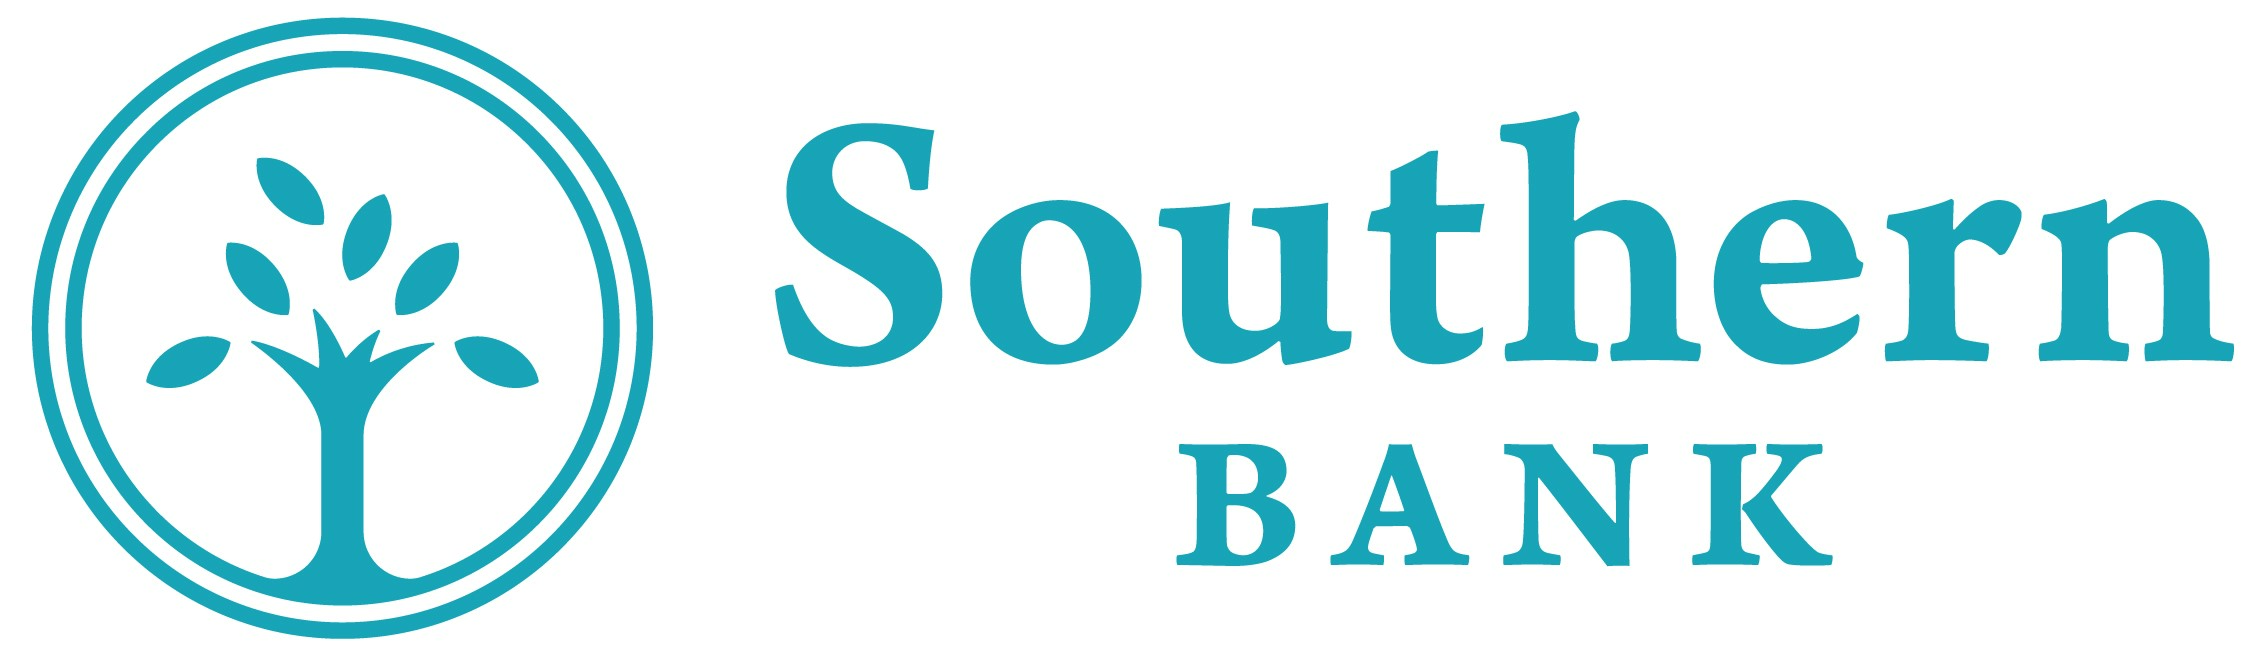 southern bank